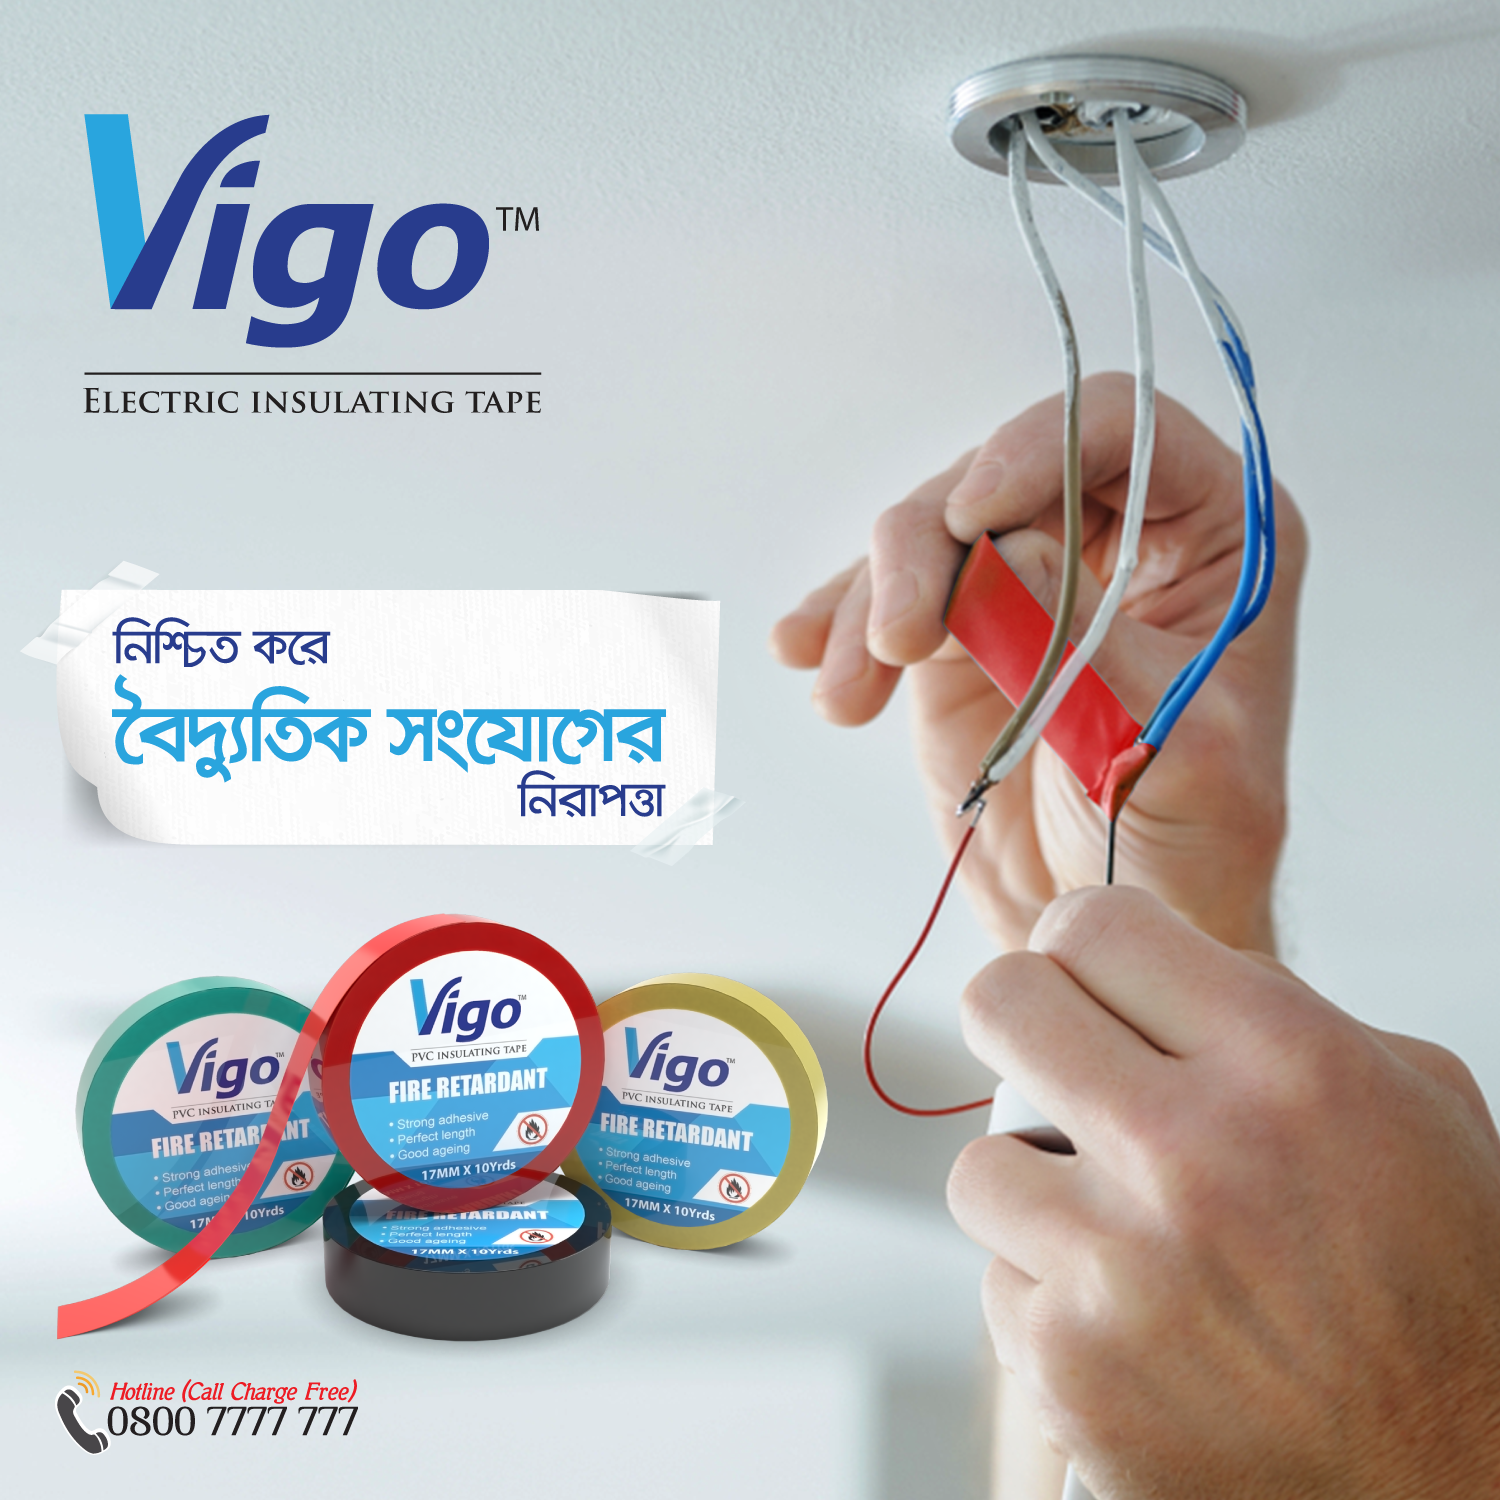 Vigo Electric Insulating Tape